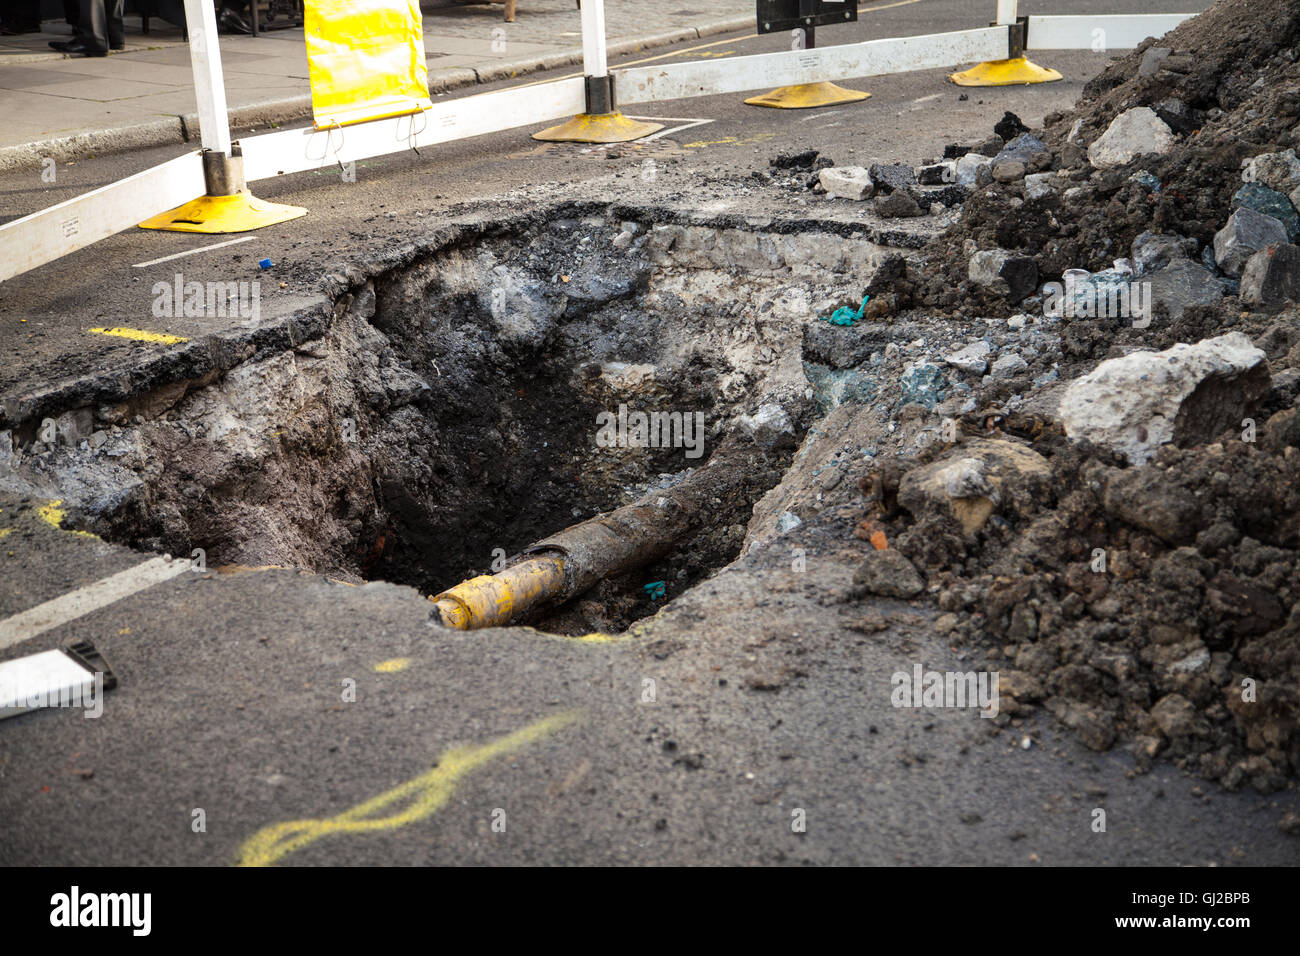 Un trou dans la rue, révélant un tuyau jaune sur un site de construction à Camden, Londres 2016. Les décombres et débris sur le côté. Banque D'Images